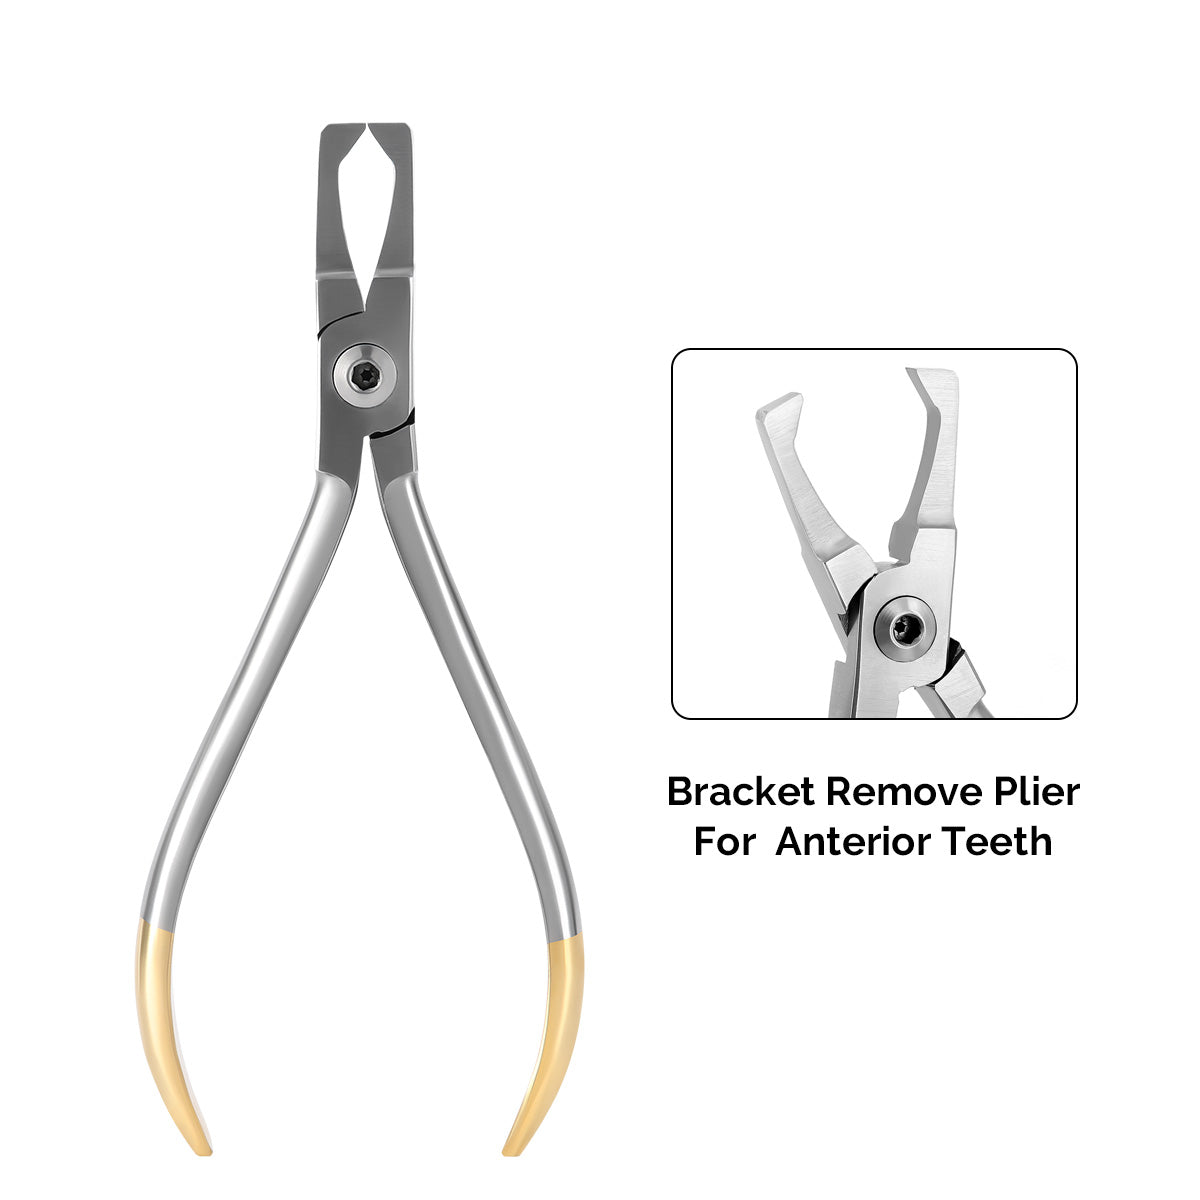 Orthodontic Bracket Remove Plier for Anterior Teeth - azdentall.com